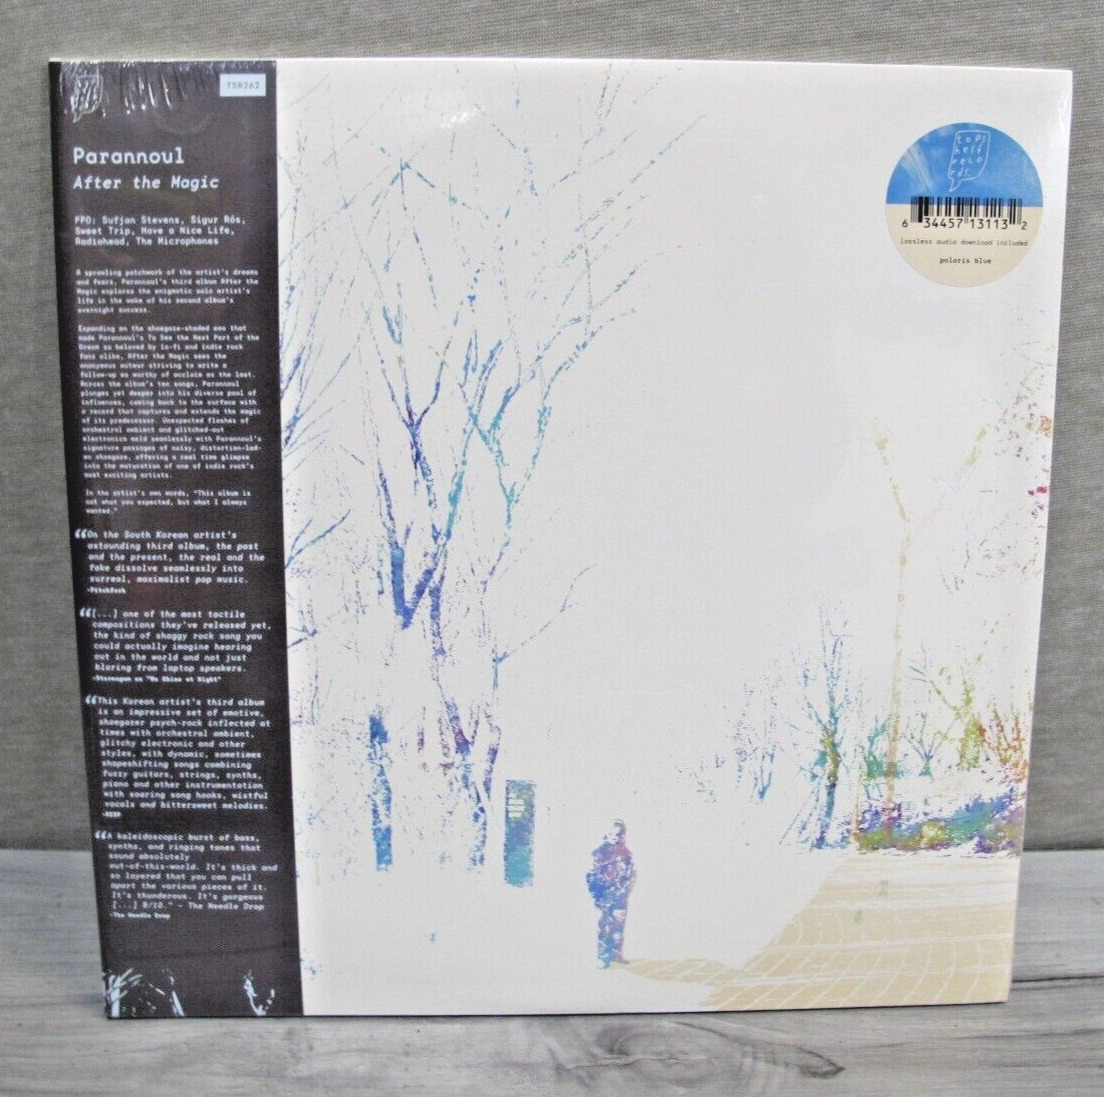 Parannoul - After The Magic 2-LPs On Polaris Blue Vinyl - Czech Republic *NEW